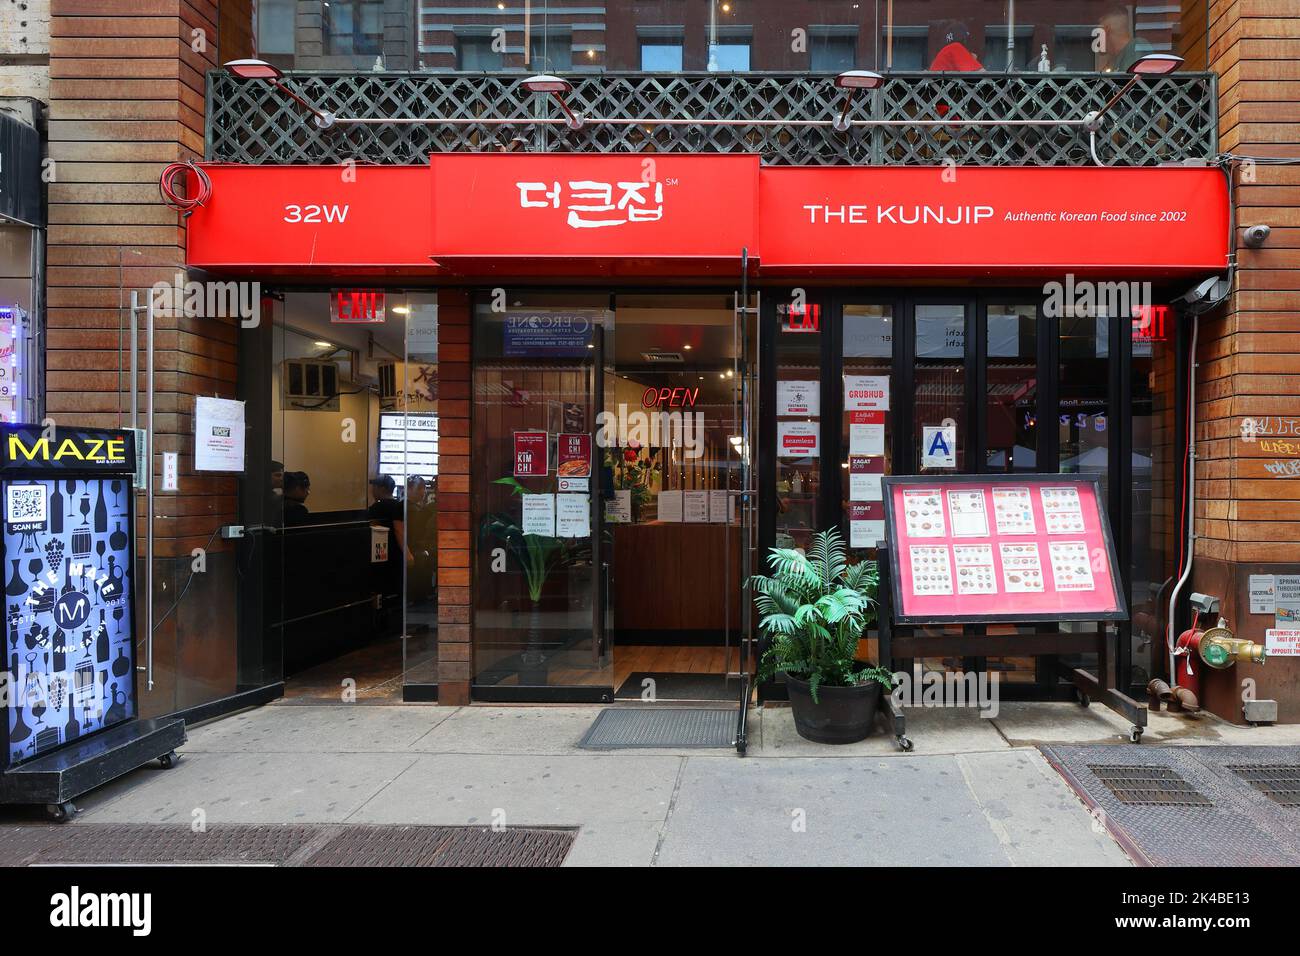 Il Kunjip 더큰집, 32 W 32nd St, New York, NYC storefront foto di un ristorante coreano barbecue nella zona Koreatown di Midtown Manhattan. Foto Stock